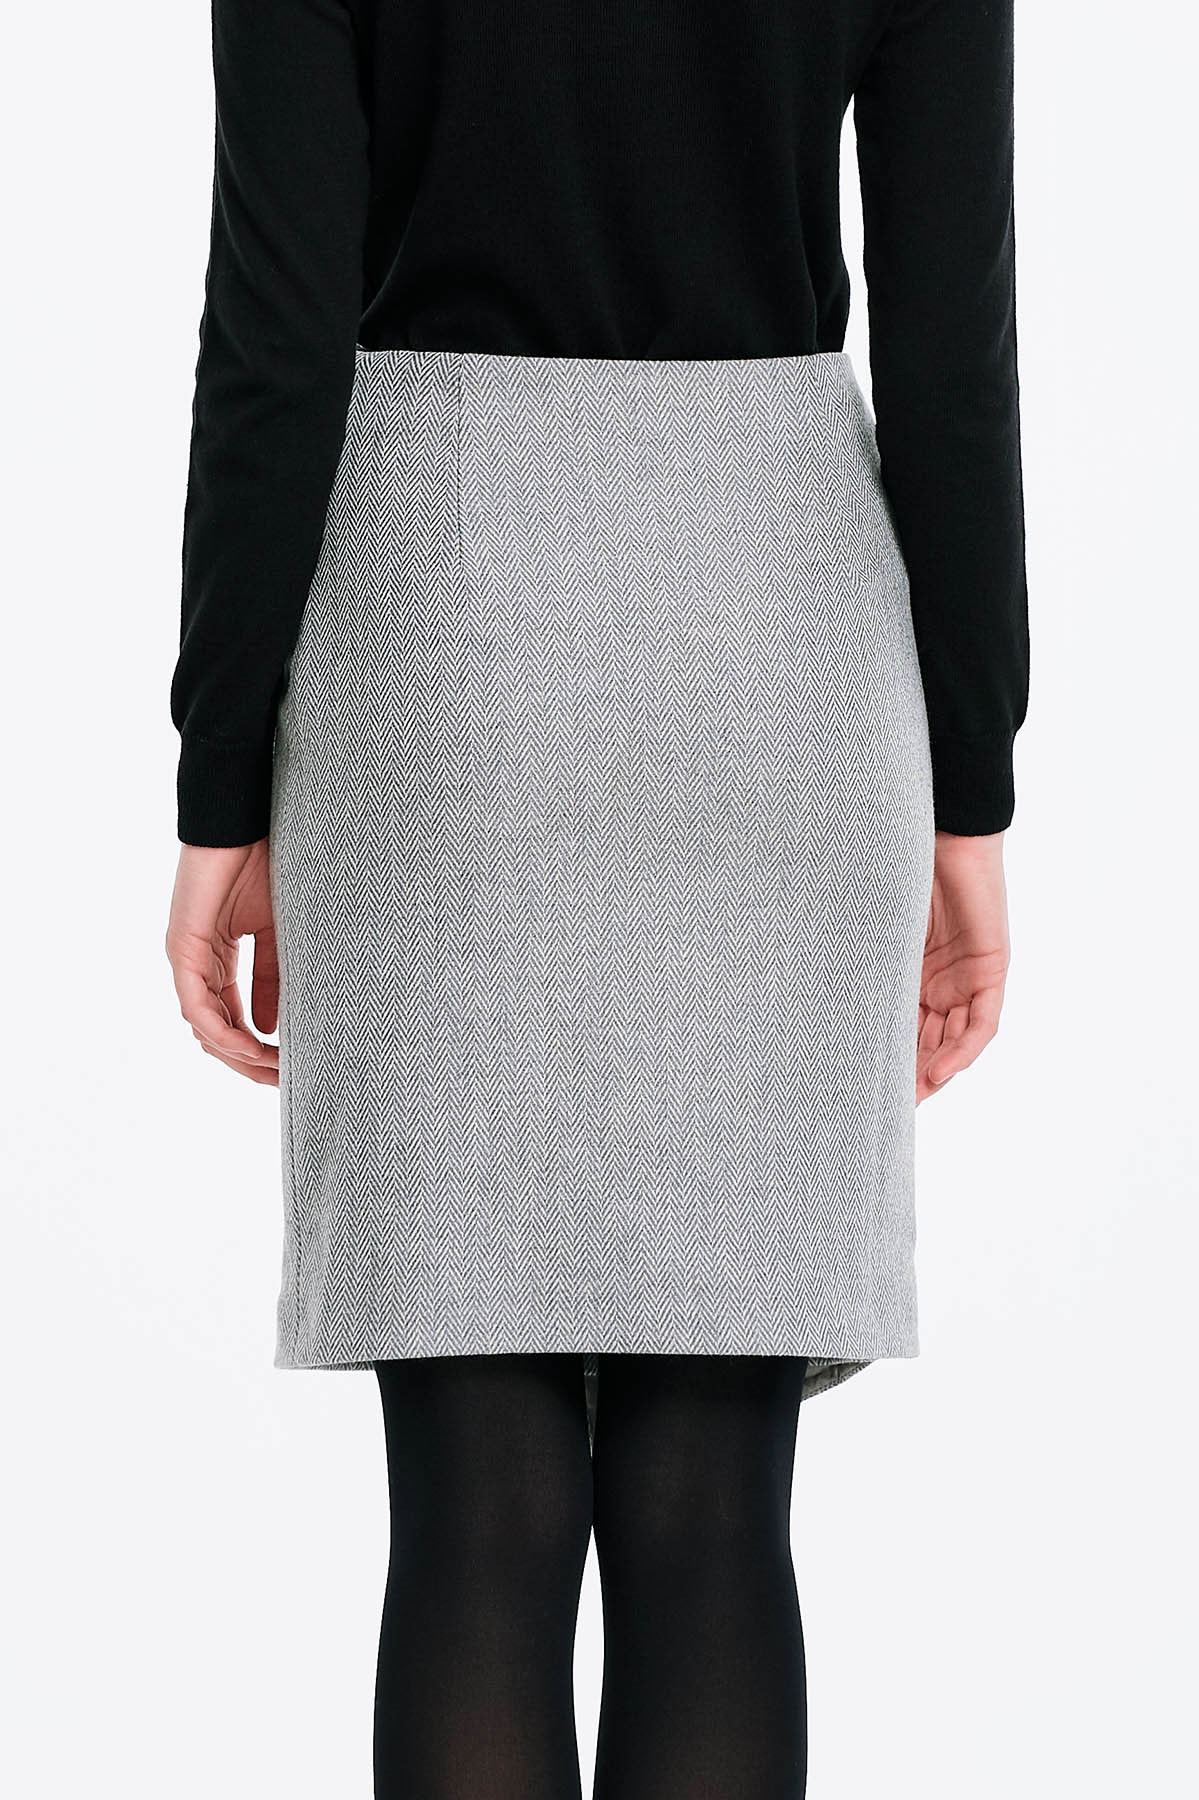 Wrap skirt with a herringbone print, photo 2